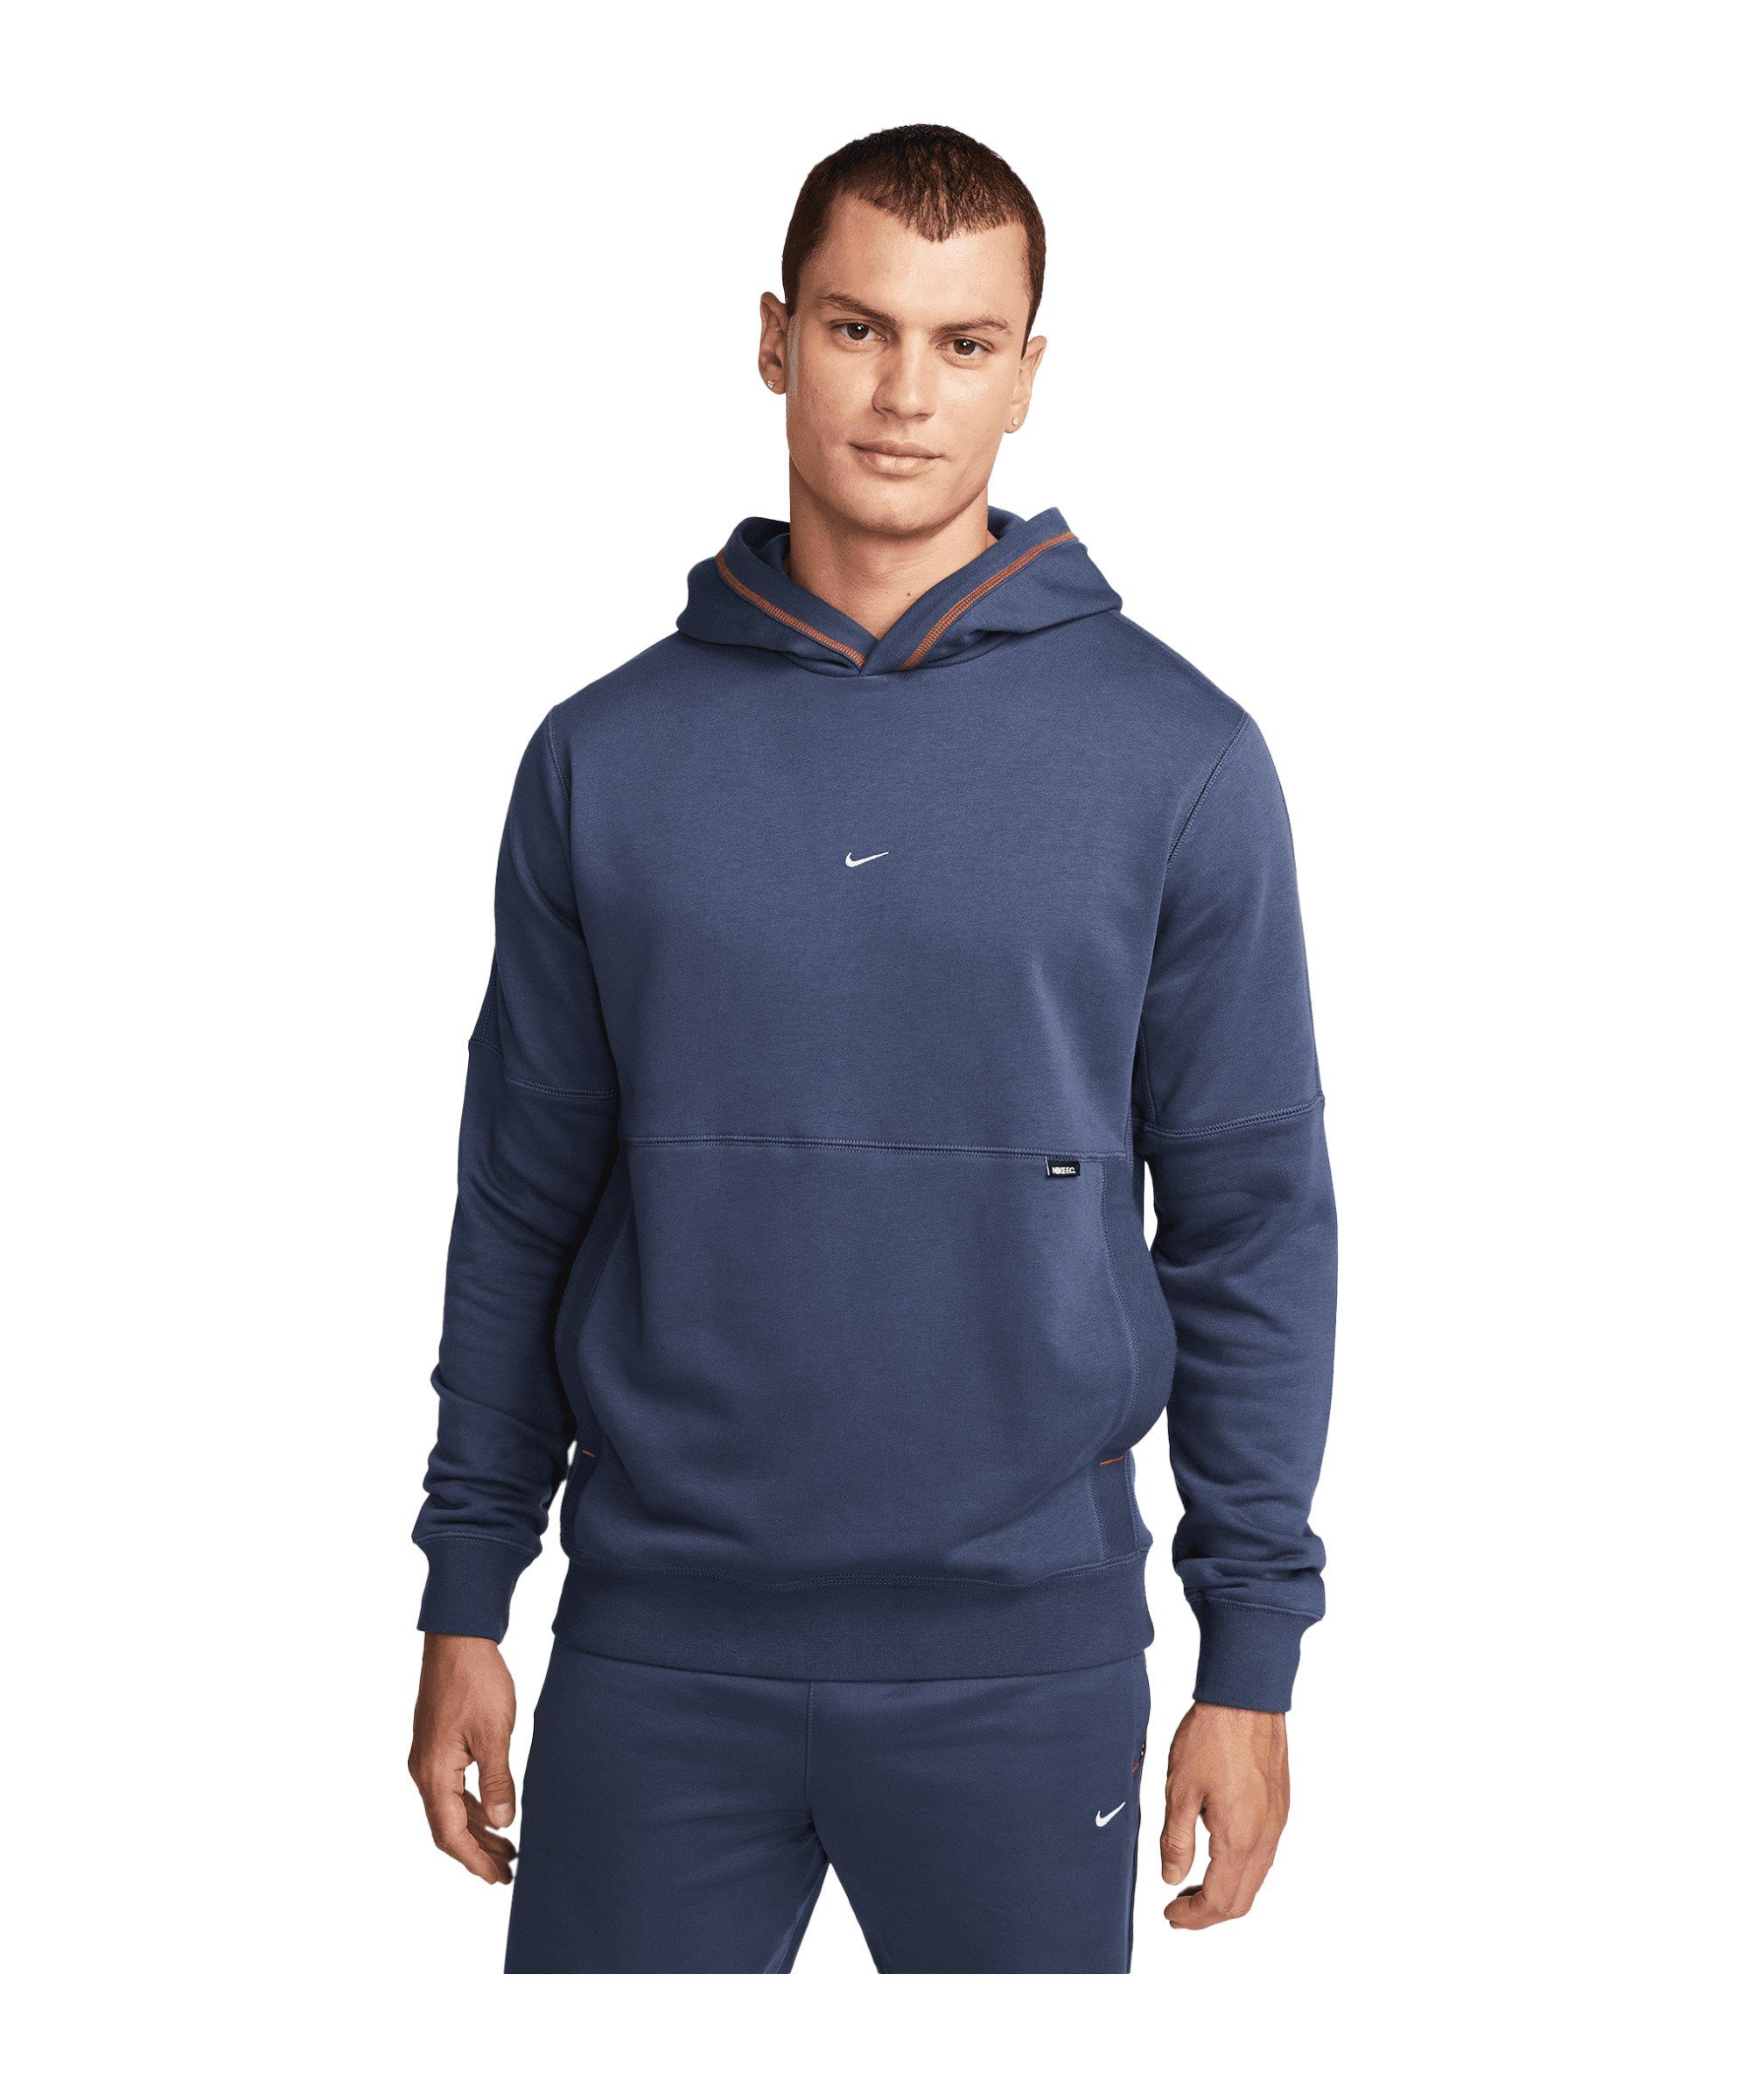 Hoody Sweatshirt blaurotweiss Fleece F.C. Sportswear Nike